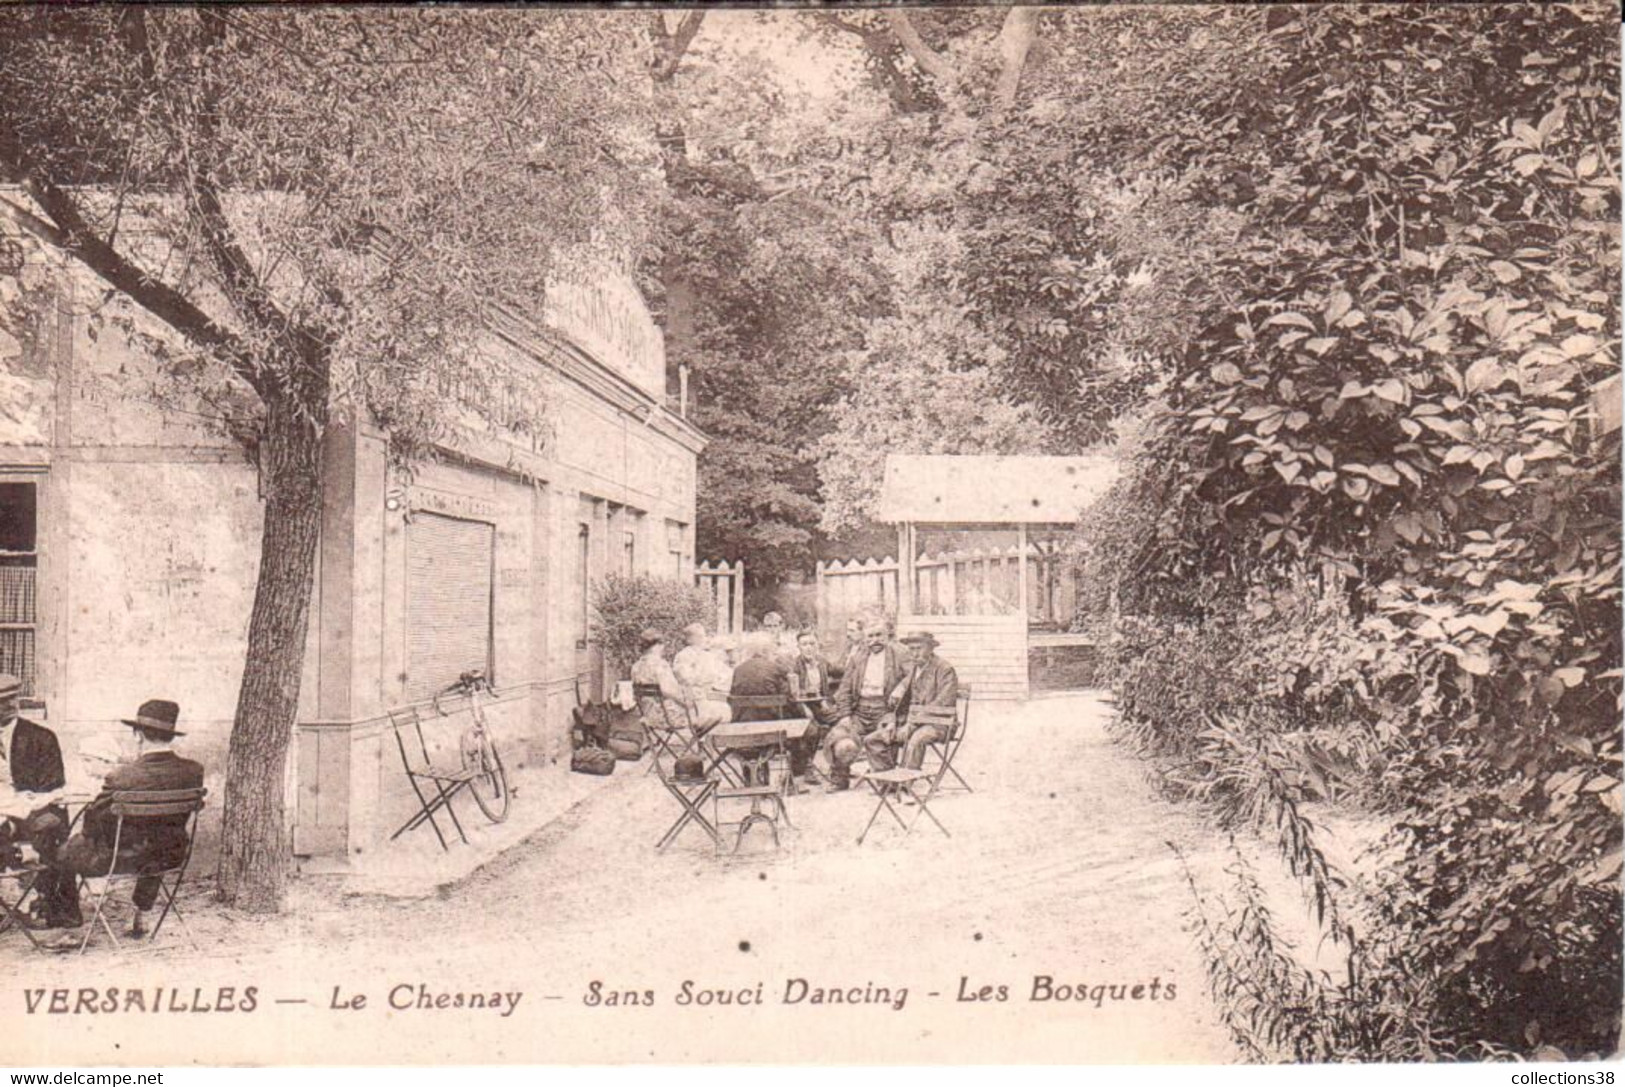 Versailles - Le Chesnay - Sans Souci Dancing - Les Bosquets - Le Chesnay